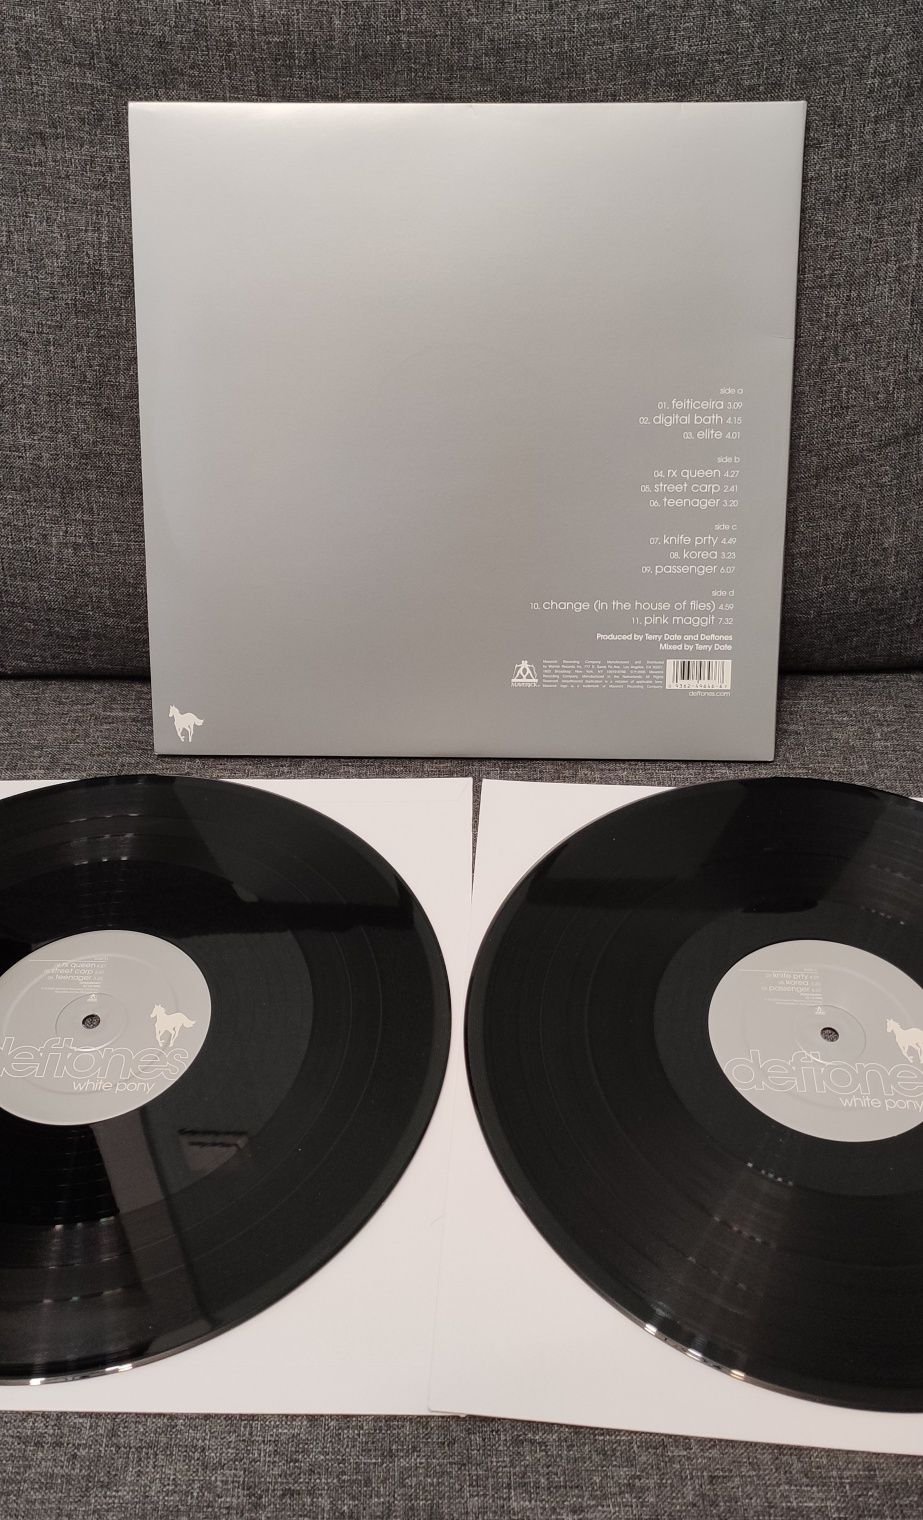 Виниловая пластинка Deftones с автографом Чино Морено. Винил. LP.